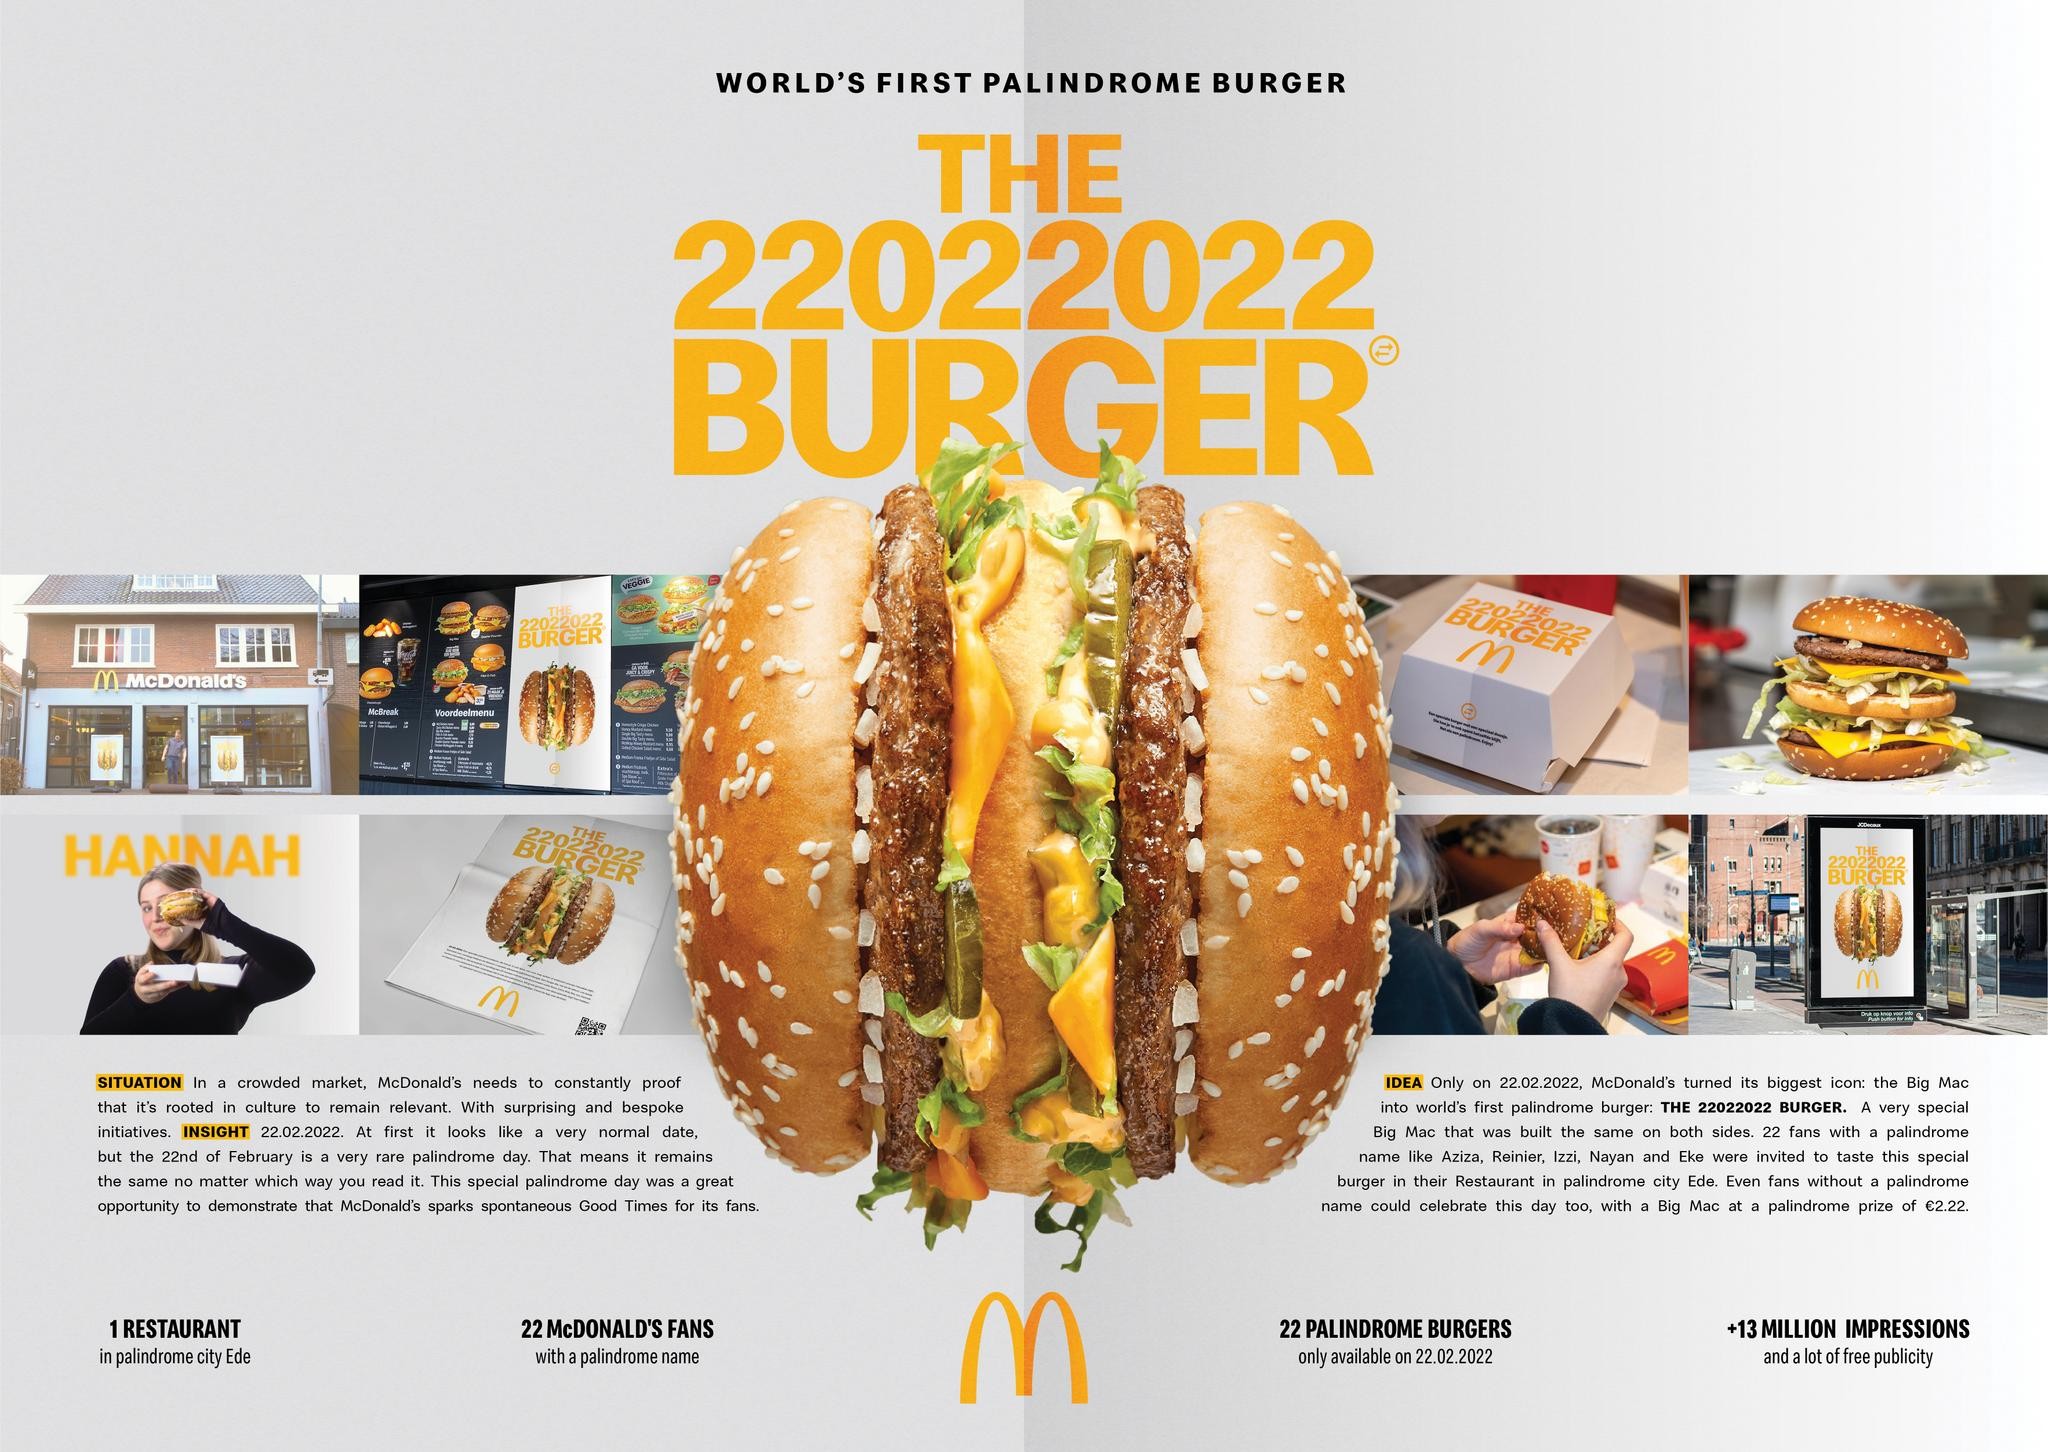 McDonald's 22022022 Burger (Palindrome Burger)